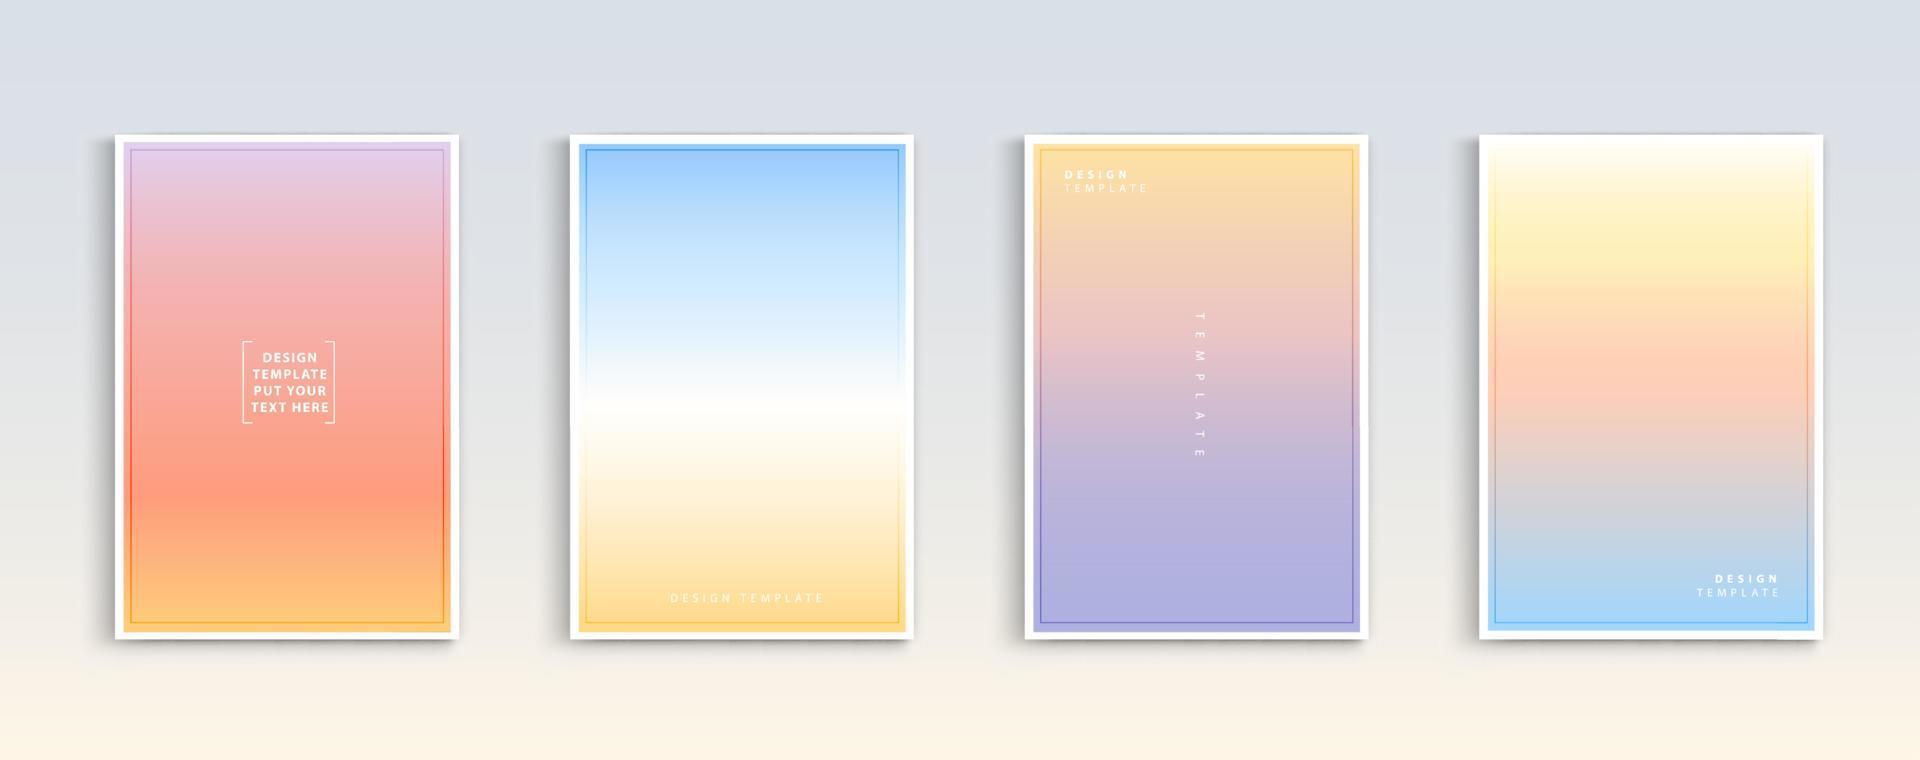 moderne hellingen zomer, zonsondergang en zonsopgang zee achtergronden vector set. kleur abstracte achtergrond voor app, webdesign, webpagina's, banners, wenskaarten. vector illustratie ontwerp